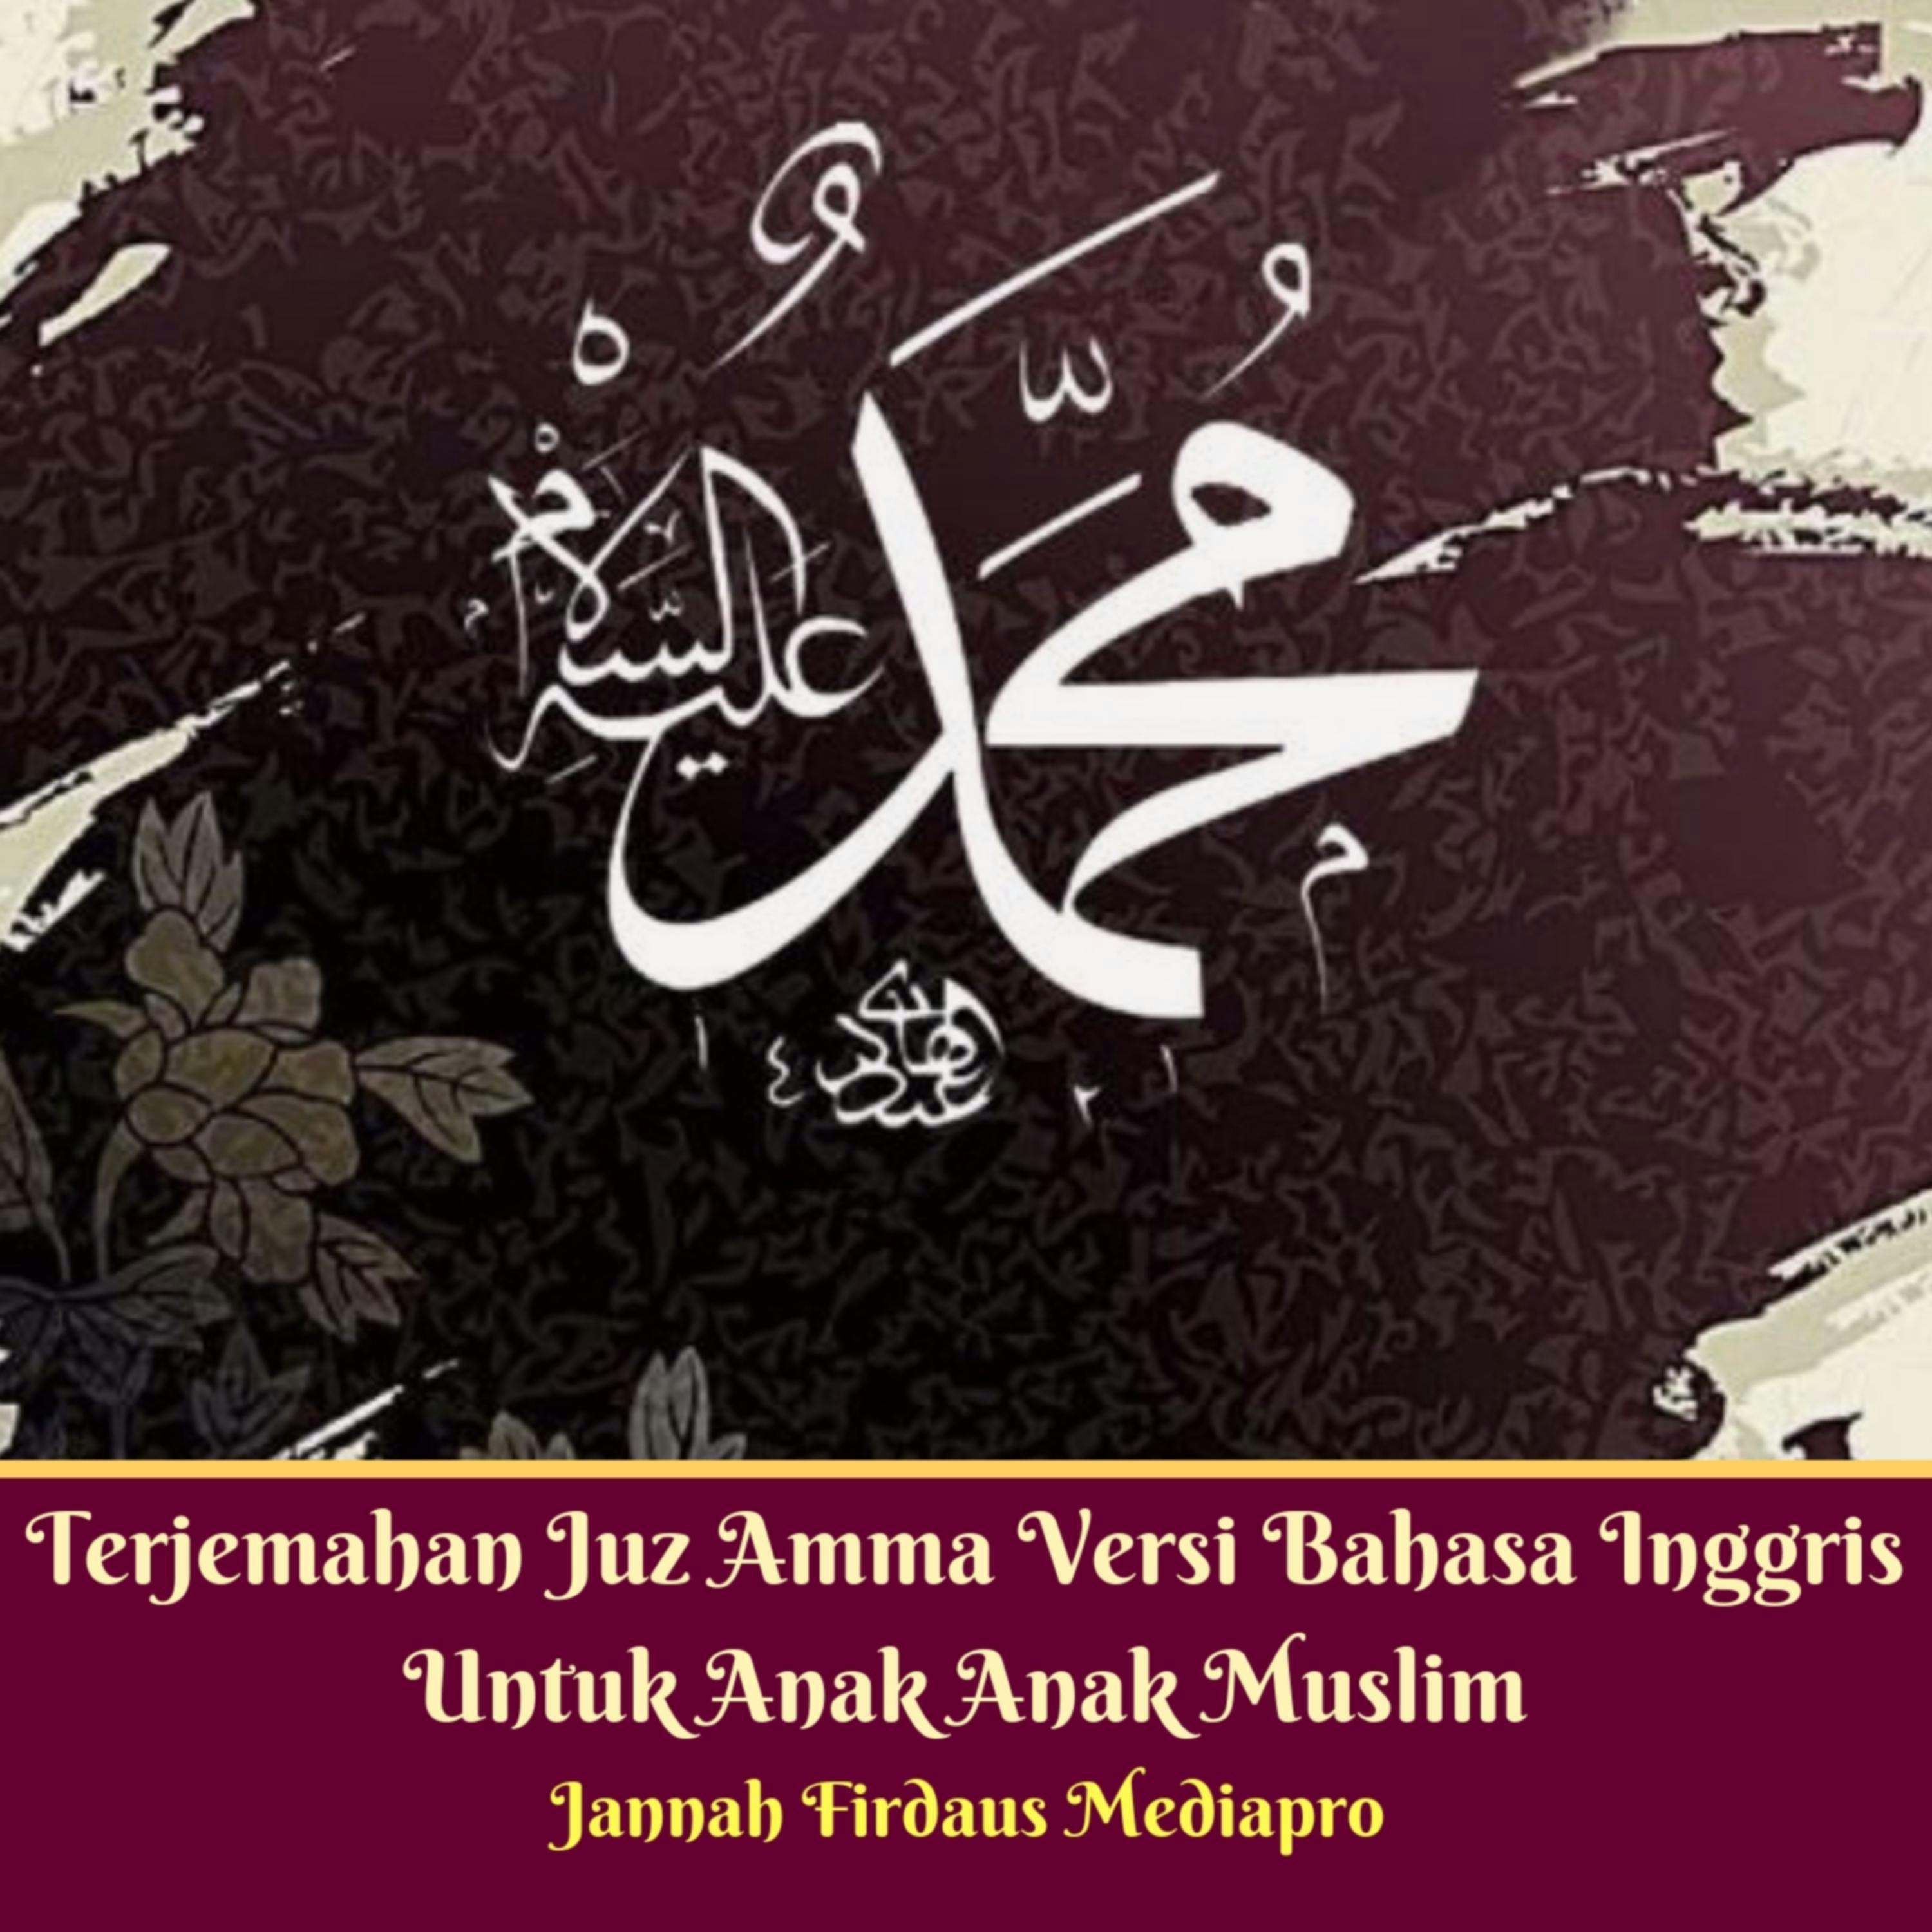 Terjemahan Juz Amma Versi Bahasa Inggris Untuk Anak Anak Muslim - undefined